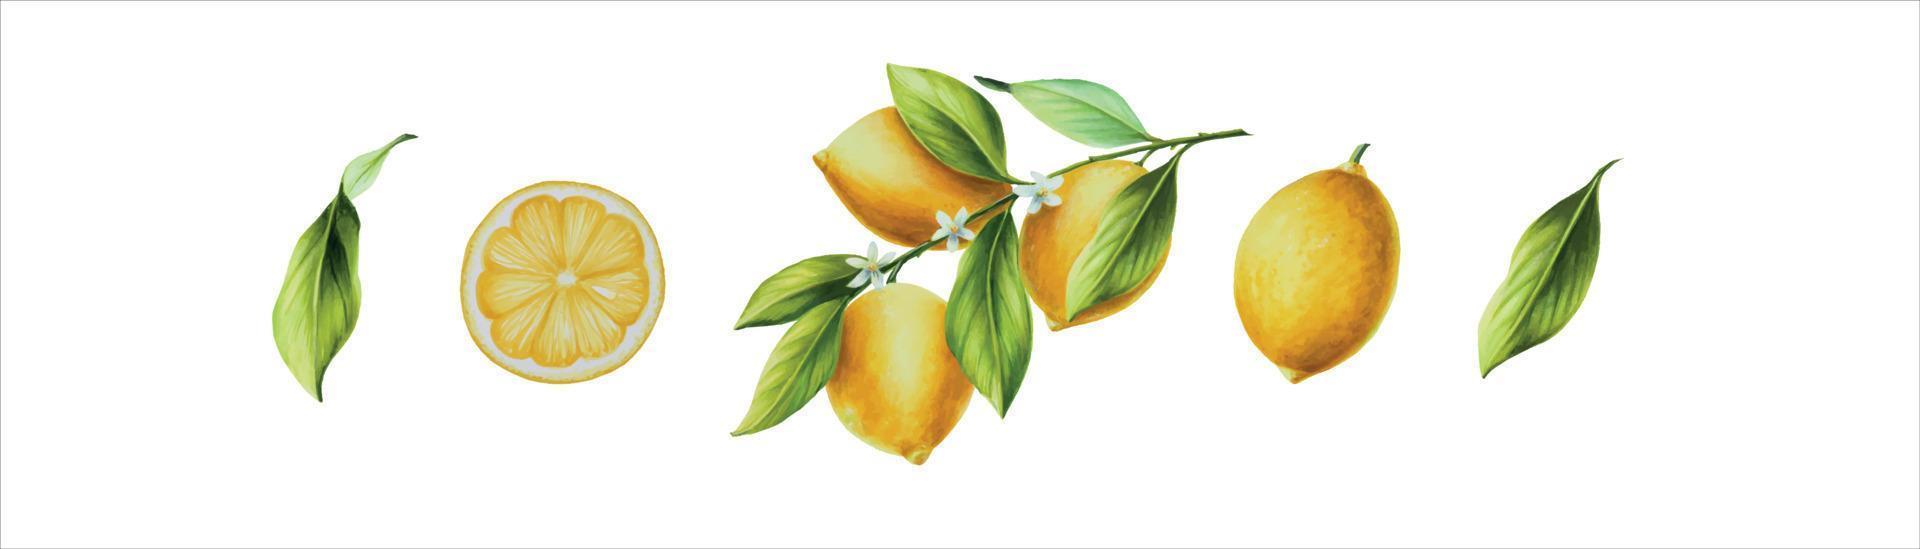 waterverf banier met vers rijp citroen met helder groen bladeren en bloemen. hand- getrokken besnoeiing citrus plakjes schilderij Aan wit achtergrond vector